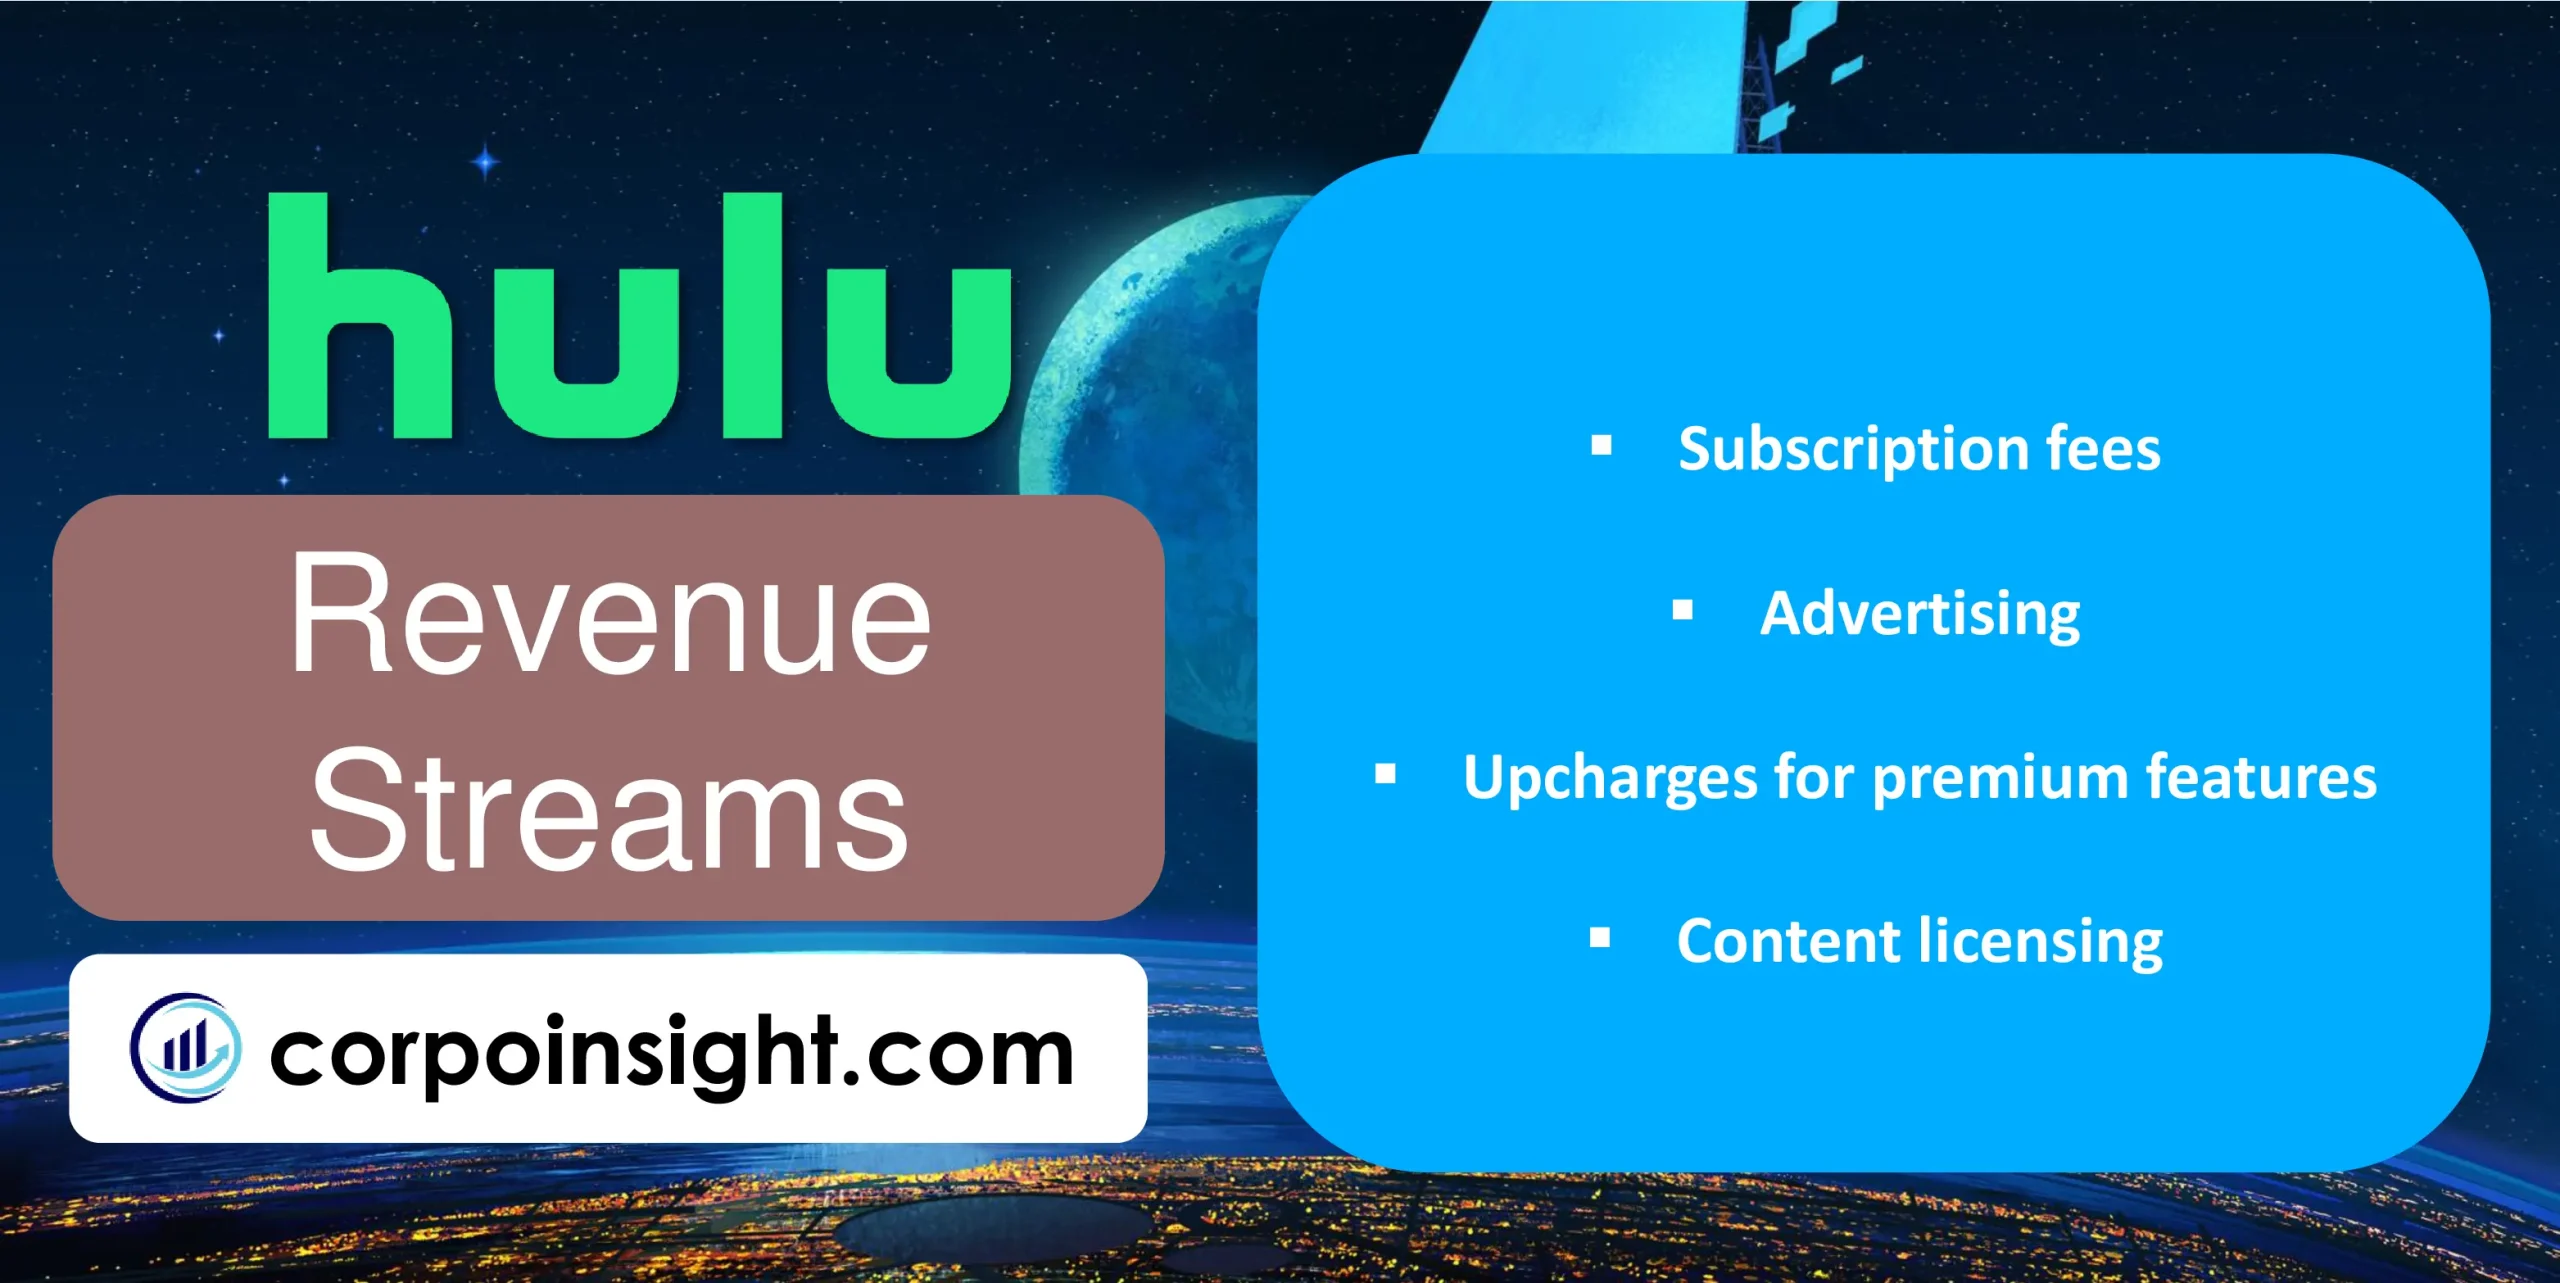 Revenue Streams of Hulu